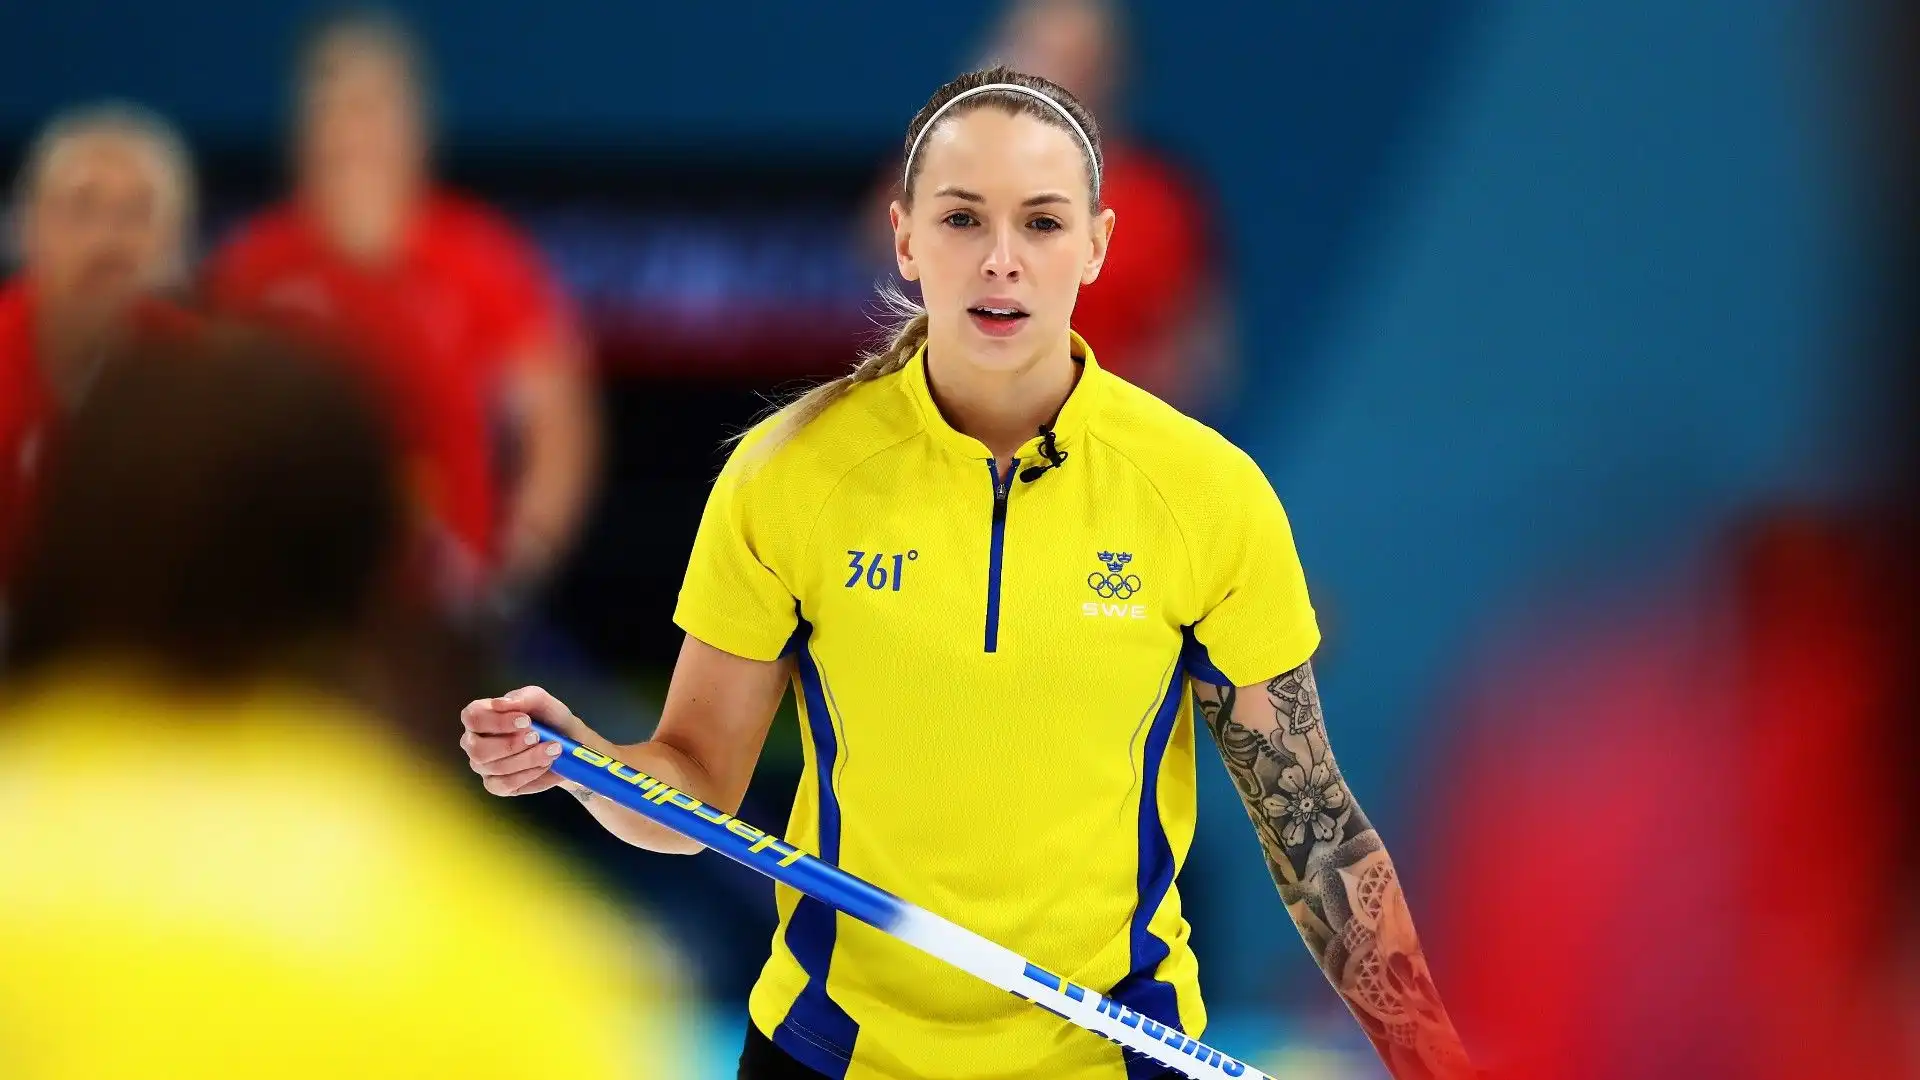 Sofia Mabergs, le foto dell'atleta svedese super tatuata